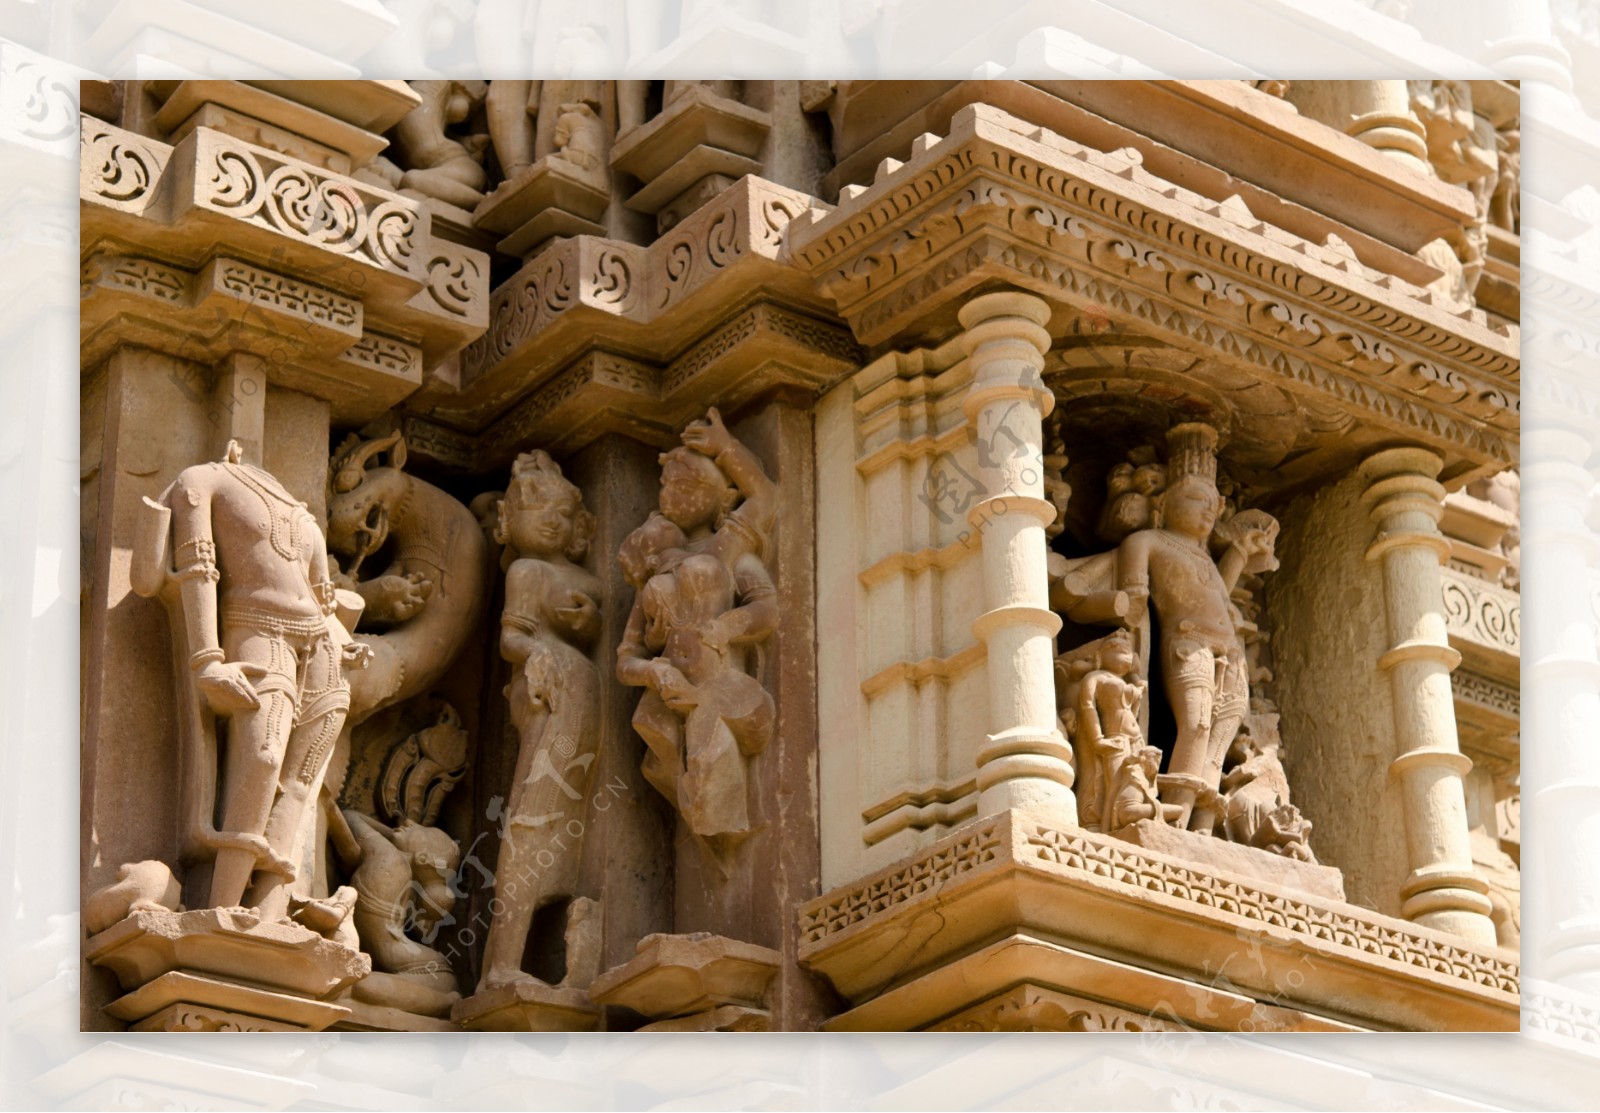 雕刻人物印度建筑设计